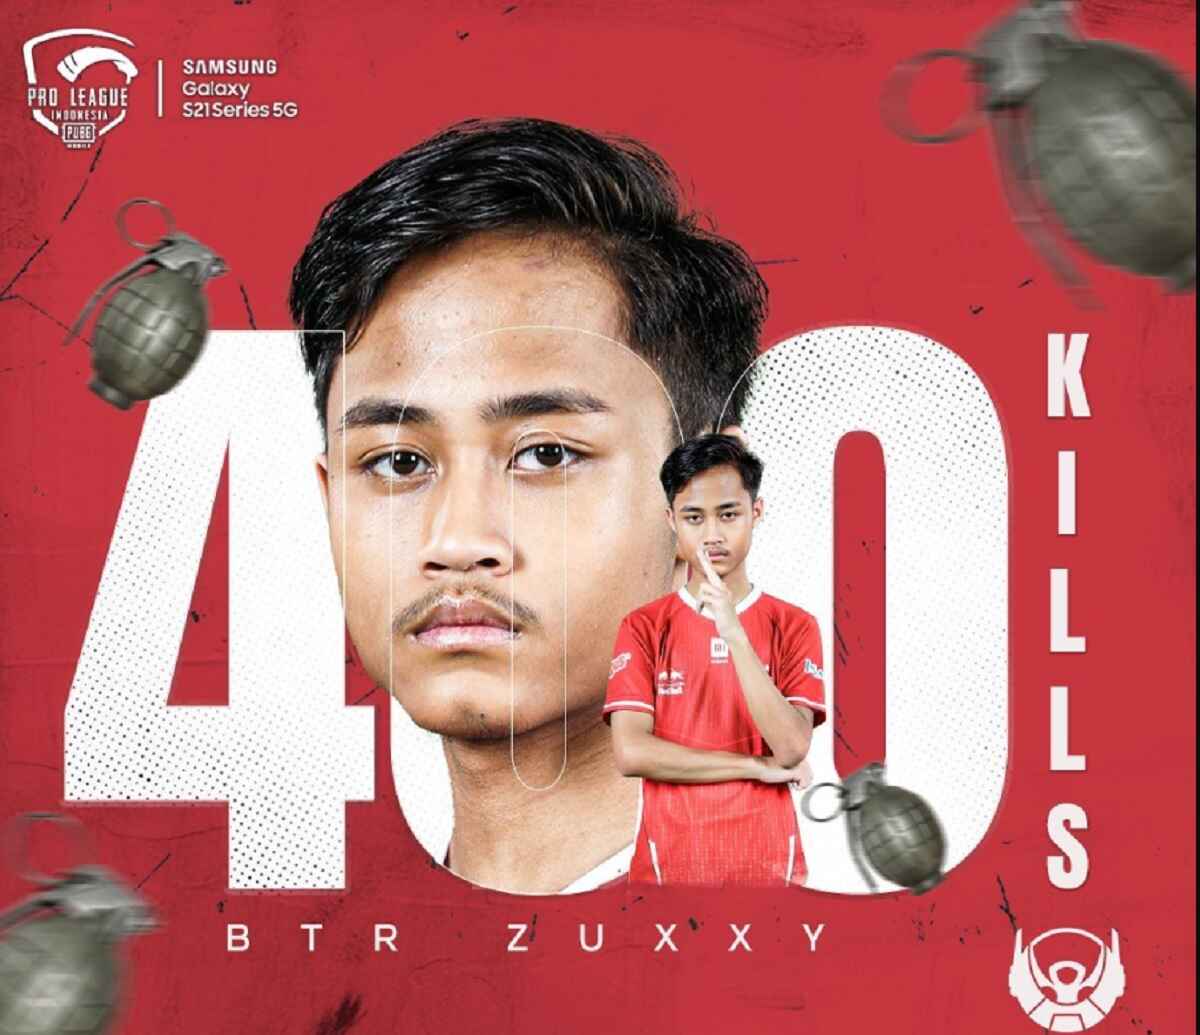 400 kills btr zuxxy